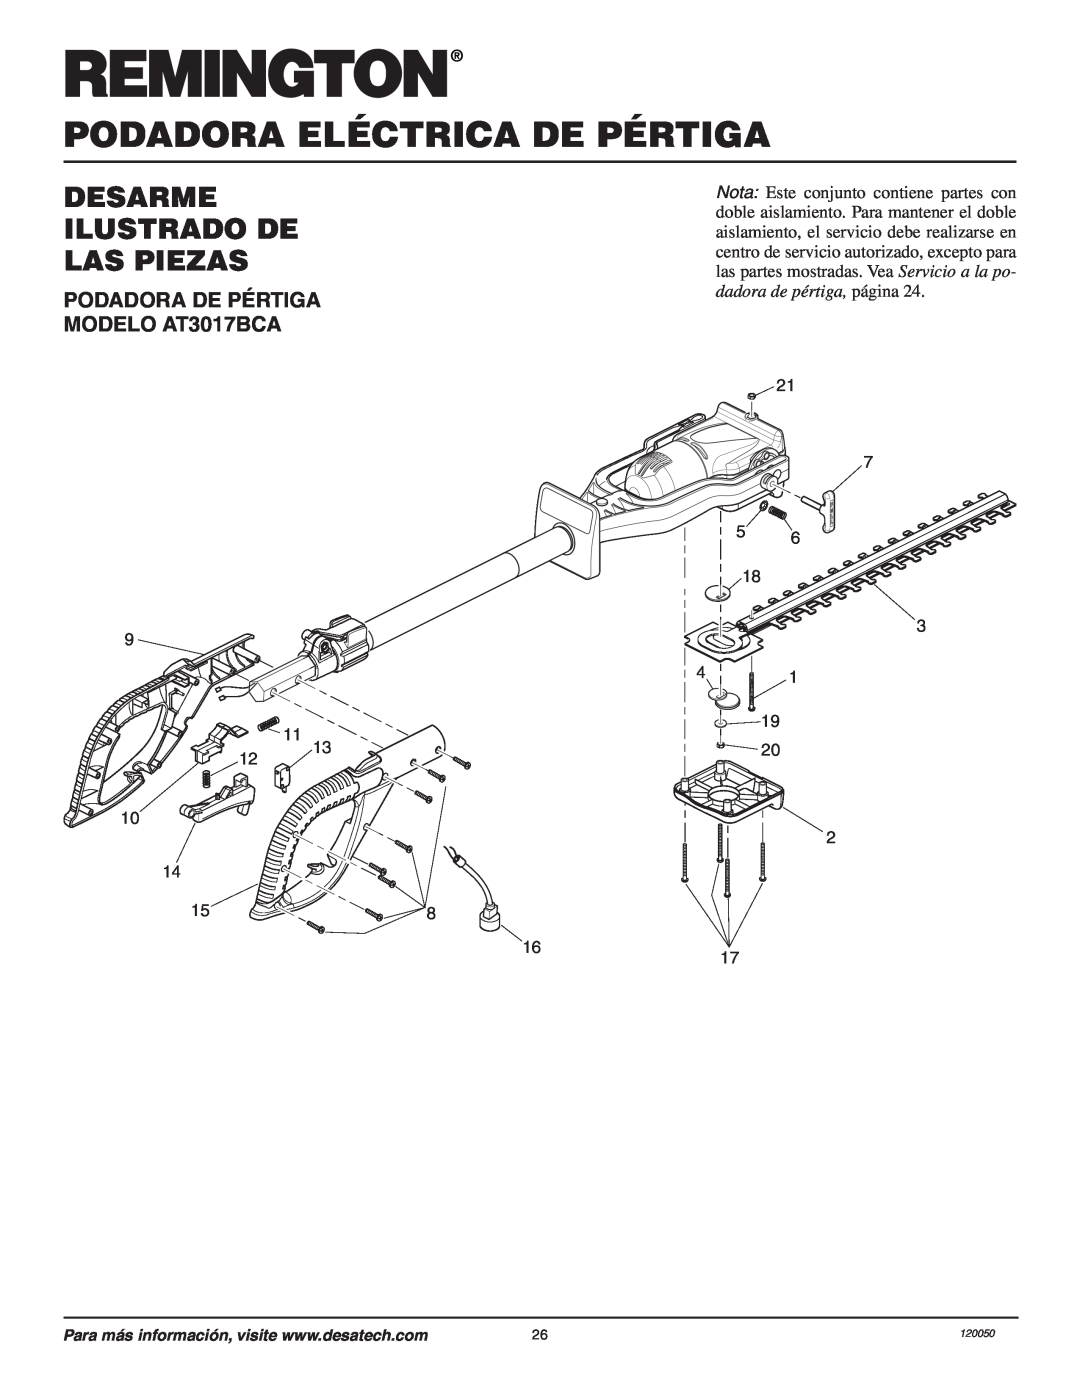 Remington Desarme Ilustrado De Las Piezas, Podadora Eléctrica De Pértiga, PODADORA DE PÉRTIGA MODELO AT3017BCA 